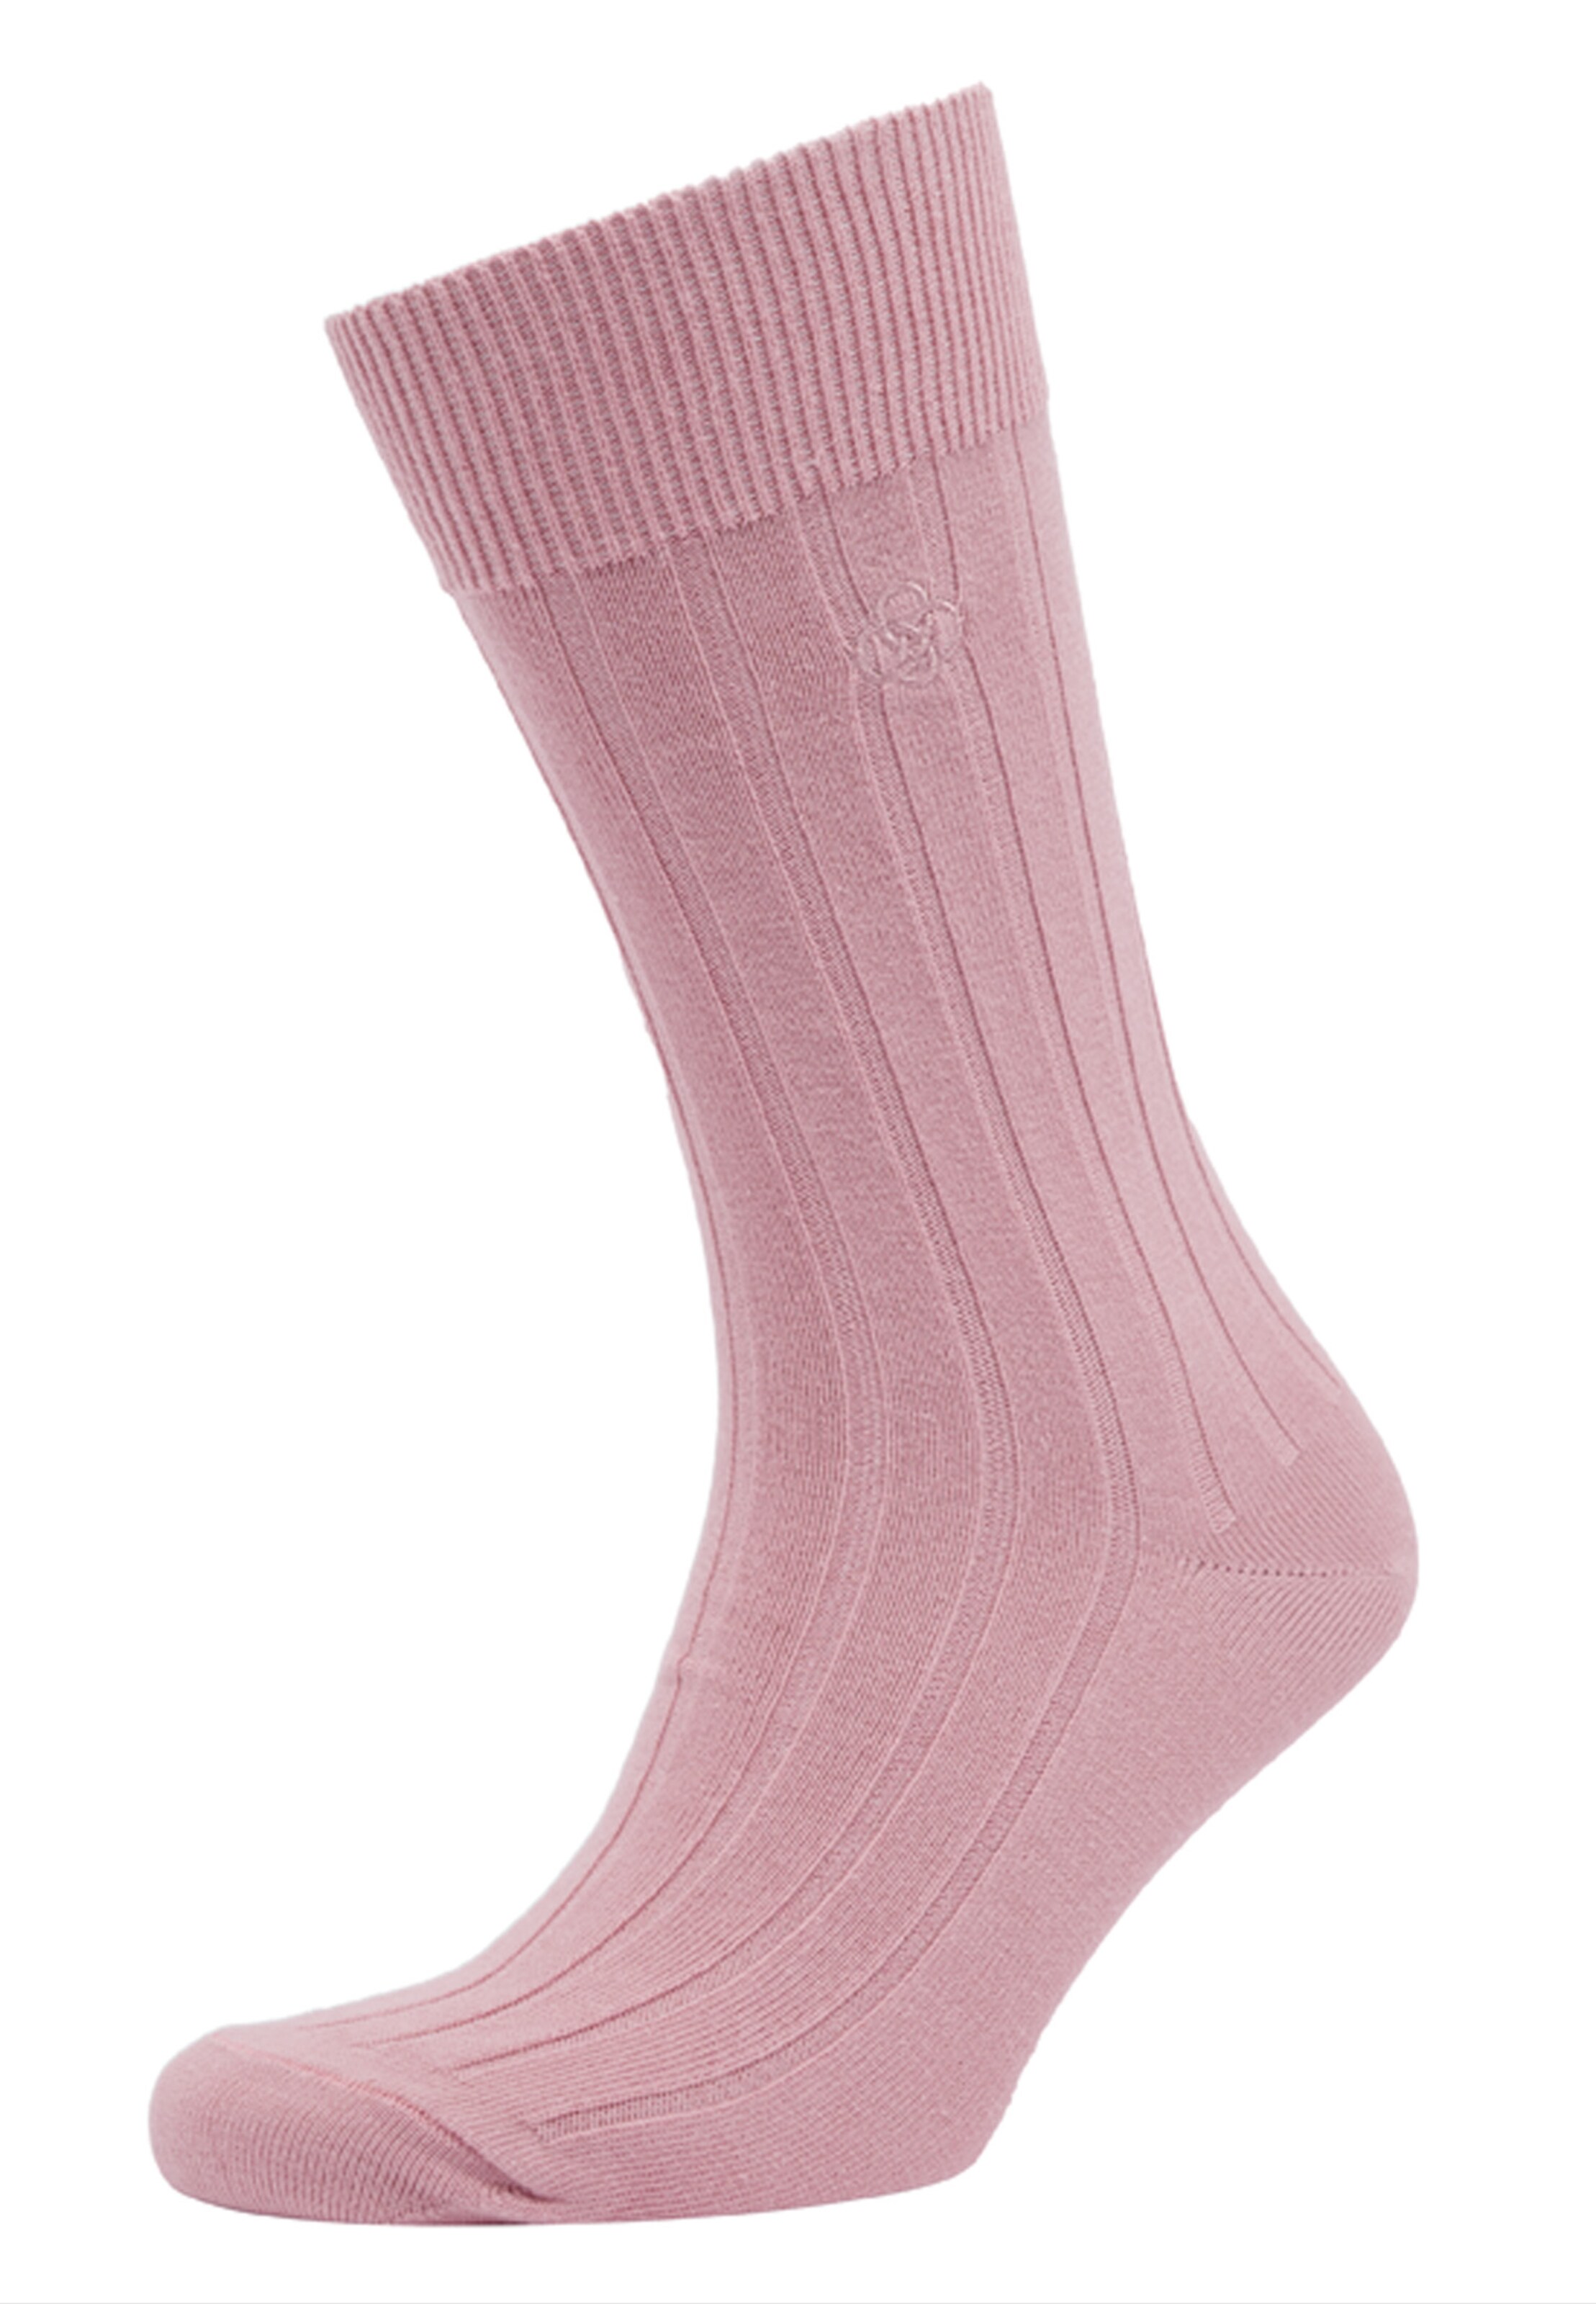 Männer Wäsche Superdry Socken in Altrosa - PV21669